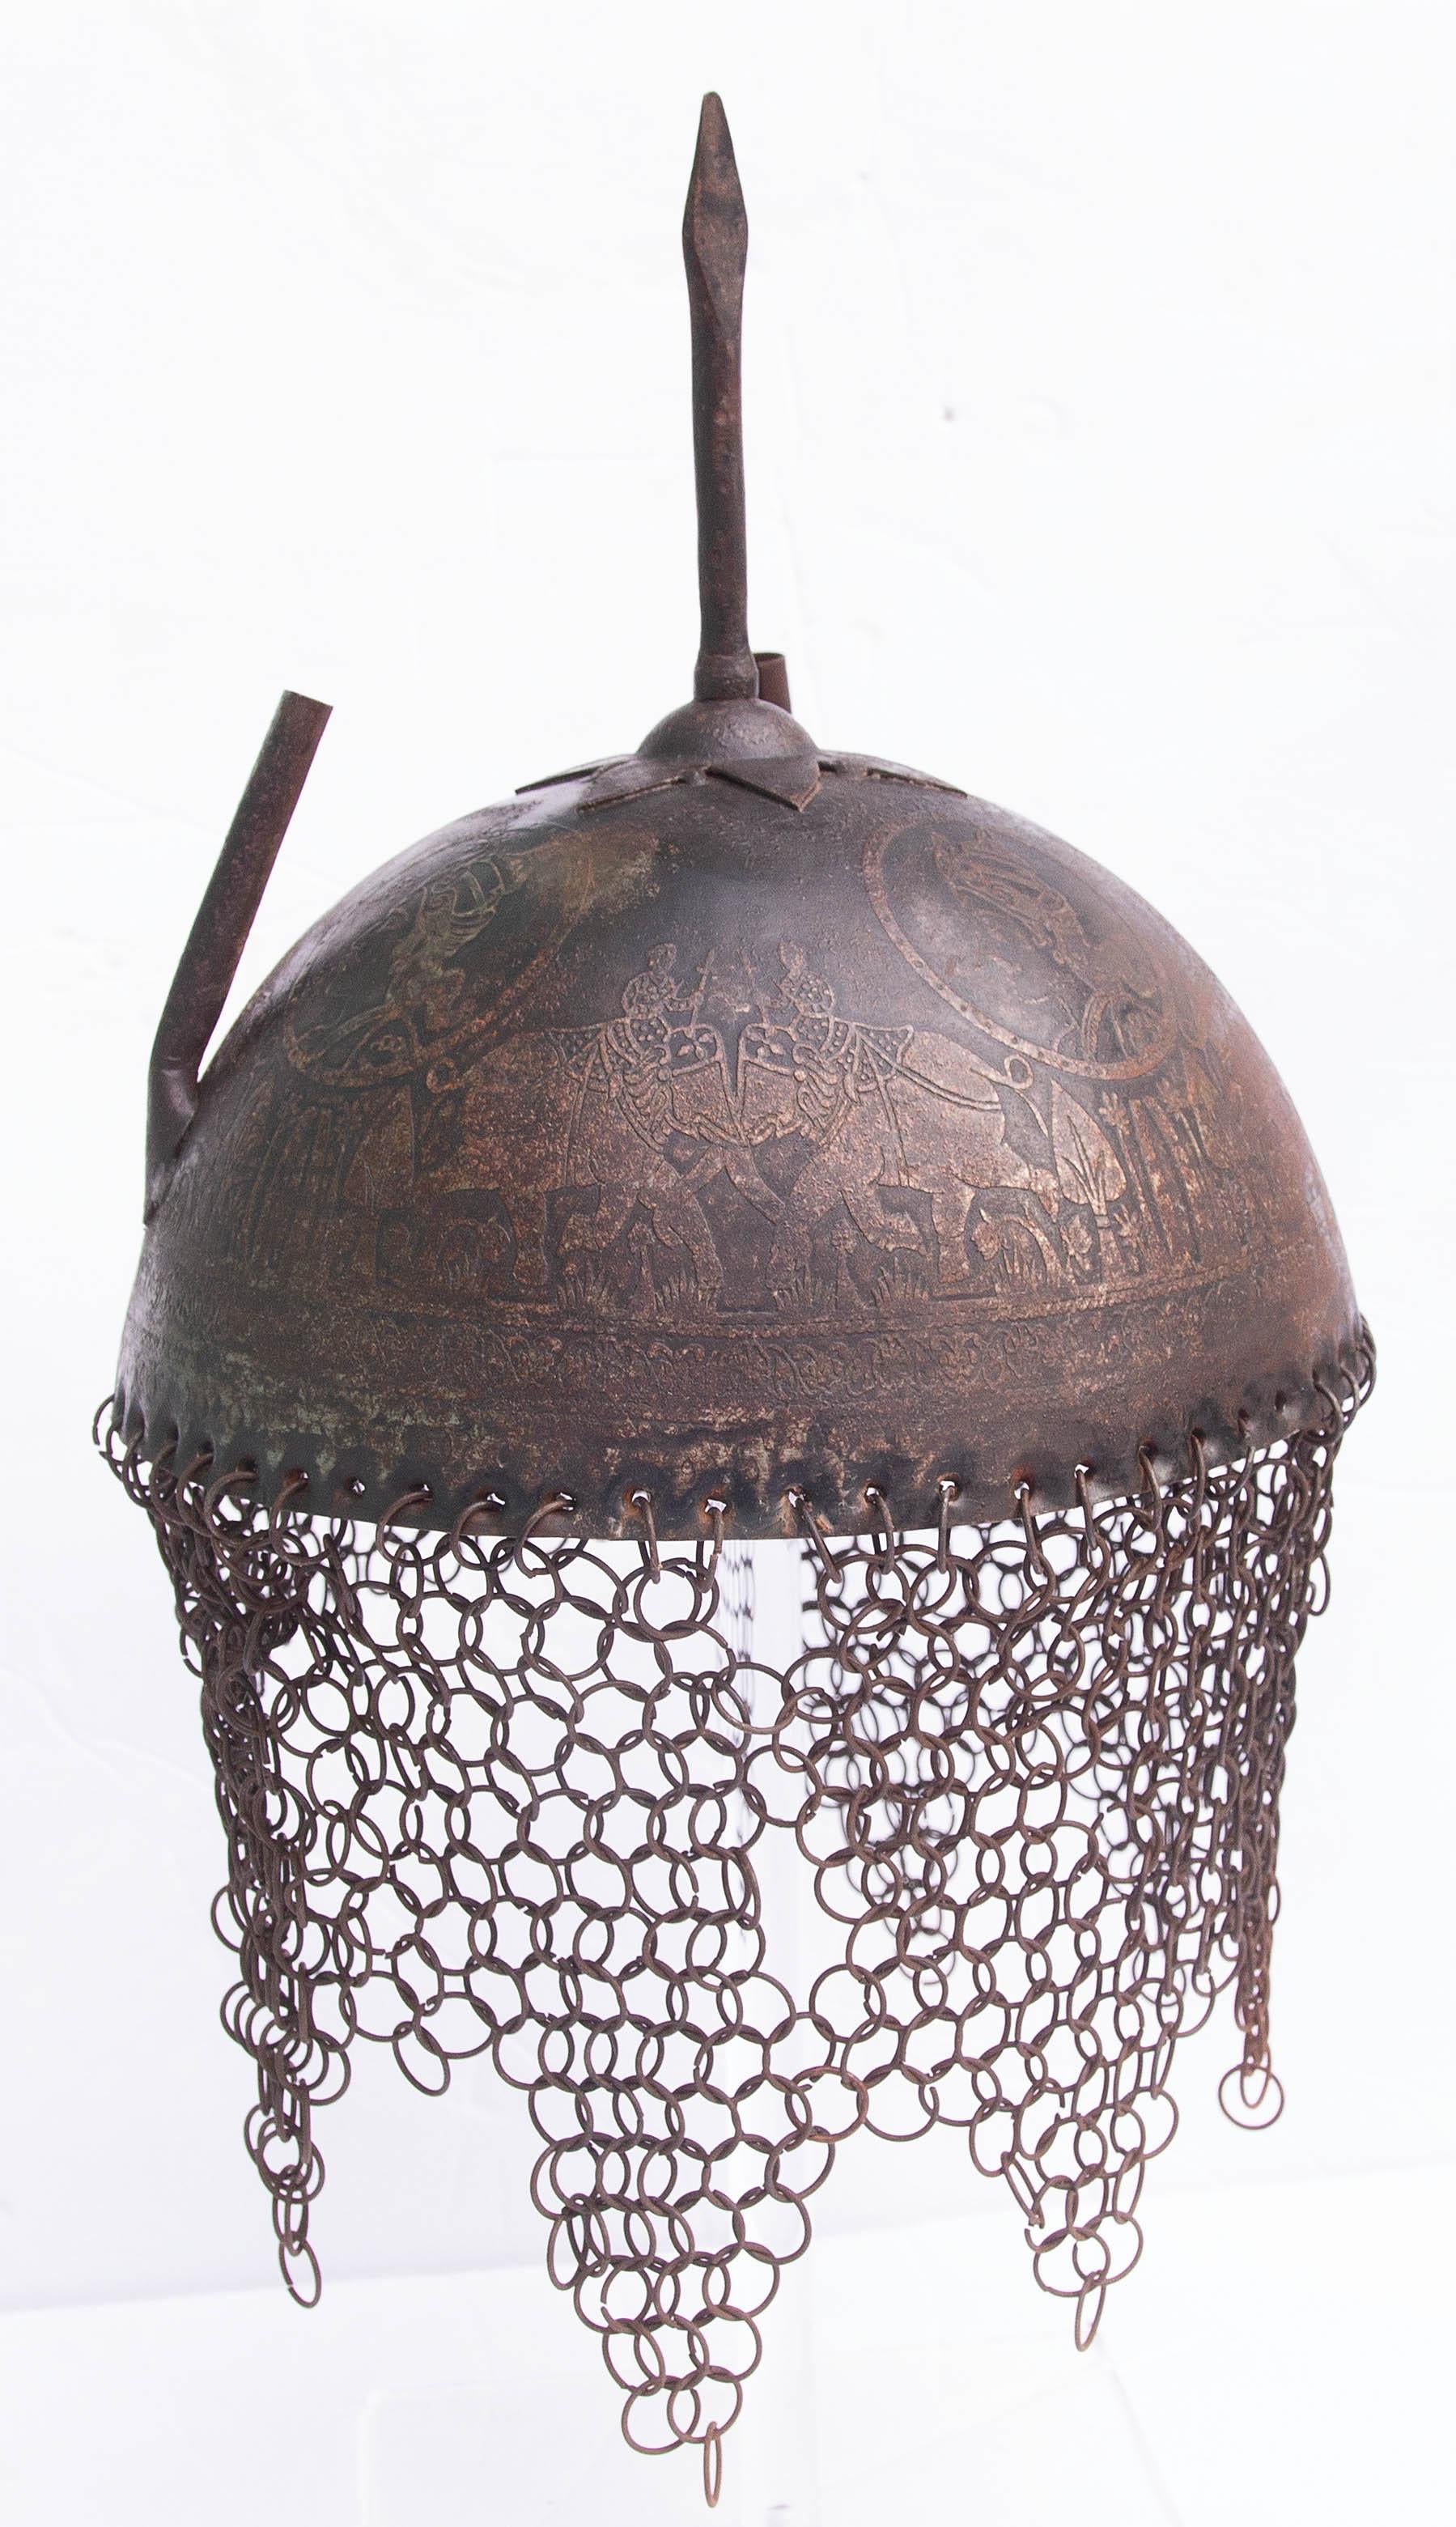 Casque islamique persan en fer avec cotte de mailles. Gravé d'éléphants et d'un guerrier arabe. Début du 20e siècle. Un présentoir en lucite est inclus.